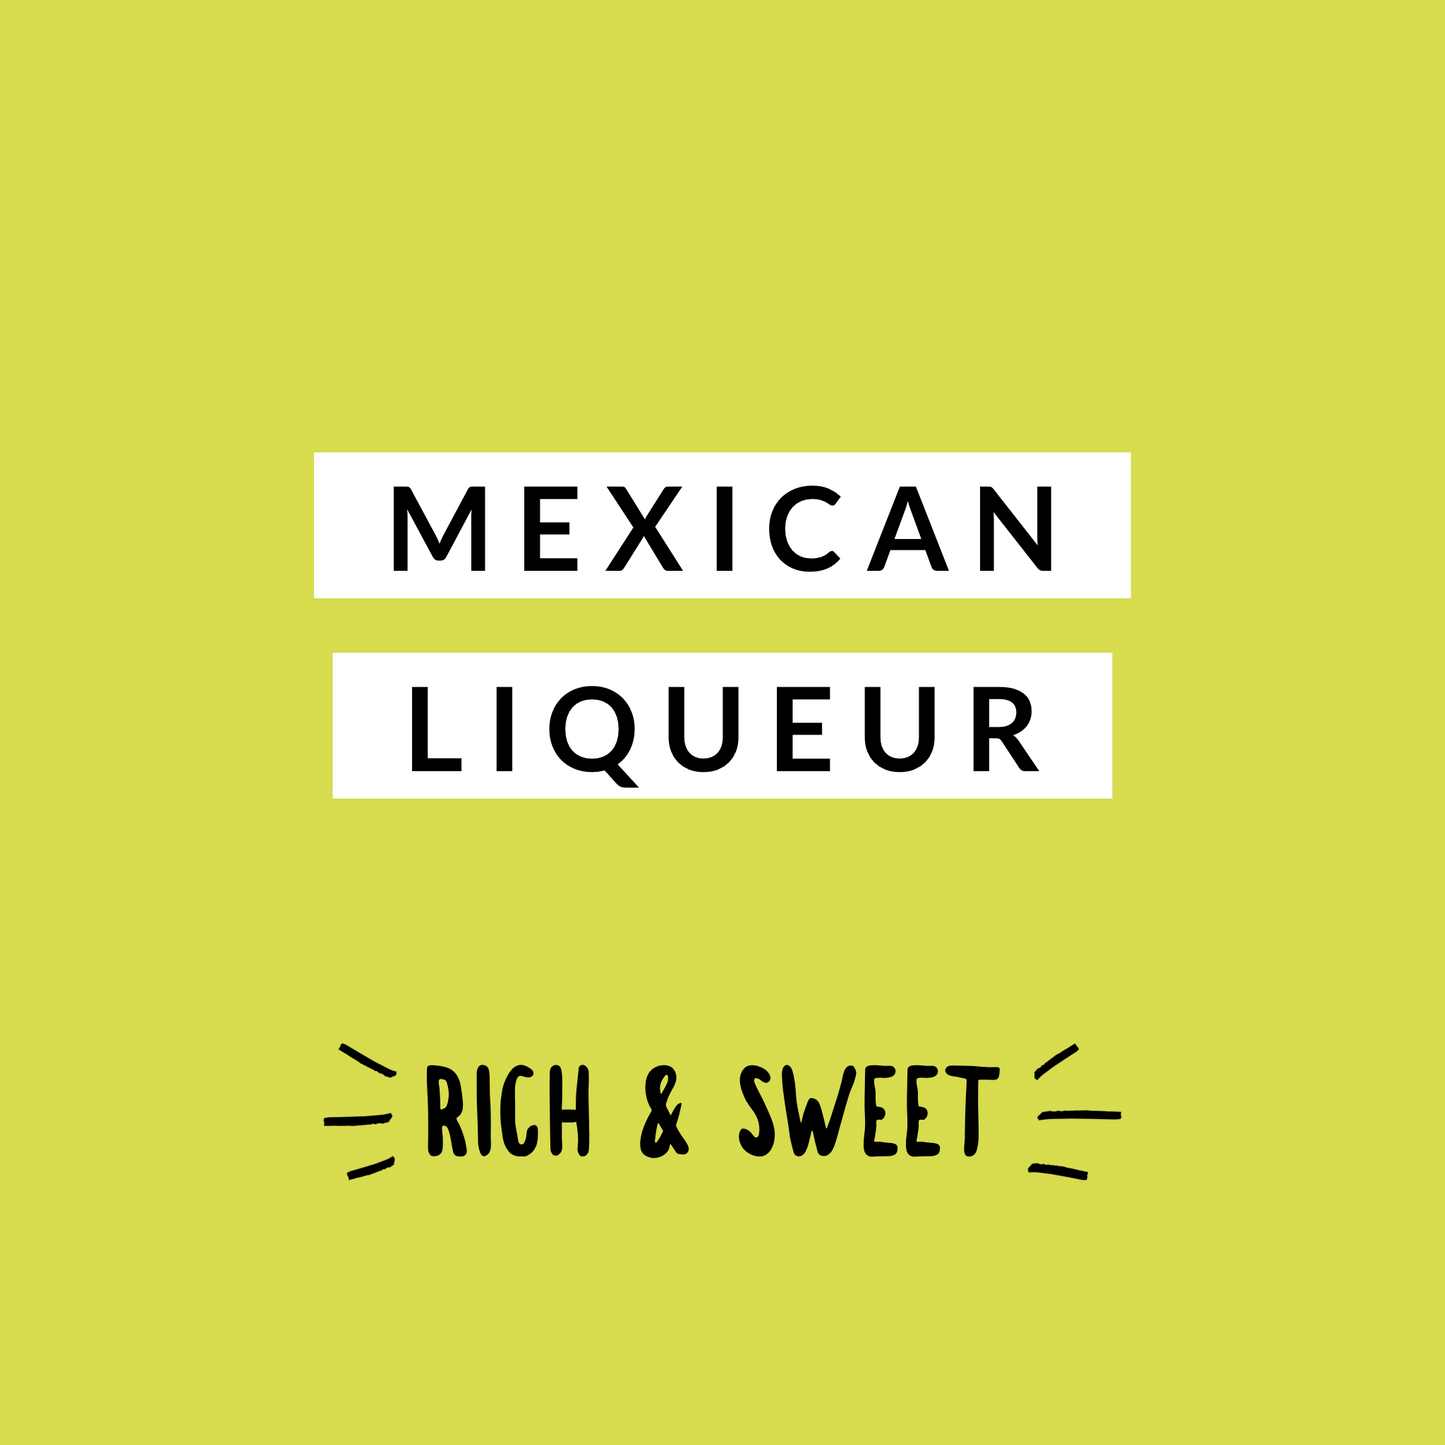 Mexican Liqueur